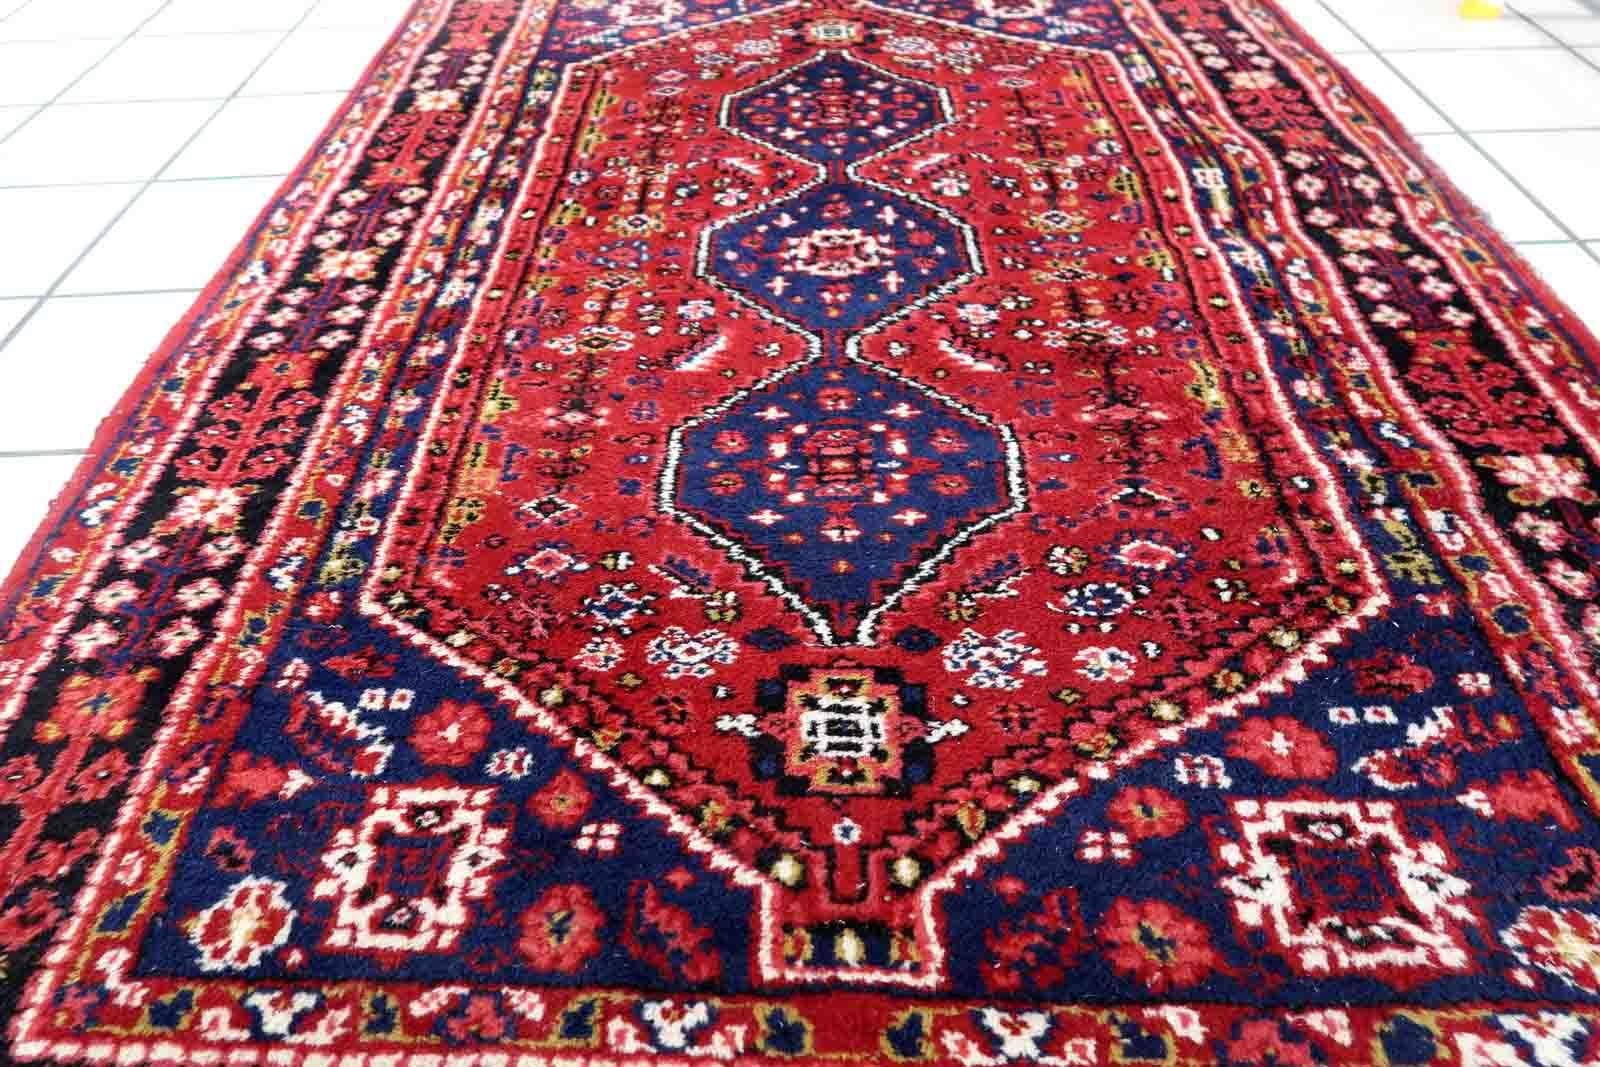 Handgefertigter persischer Shiraz-Teppich im Vintage-Stil mit Medaillon-Muster. Der Teppich ist in einem guten Originalzustand vom Ende des 20. Jahrhunderts.

-Zustand: original gut,

-Umgebung: 1970er Jahre,

-Größe: 3,1' x 4,9' (97cm x